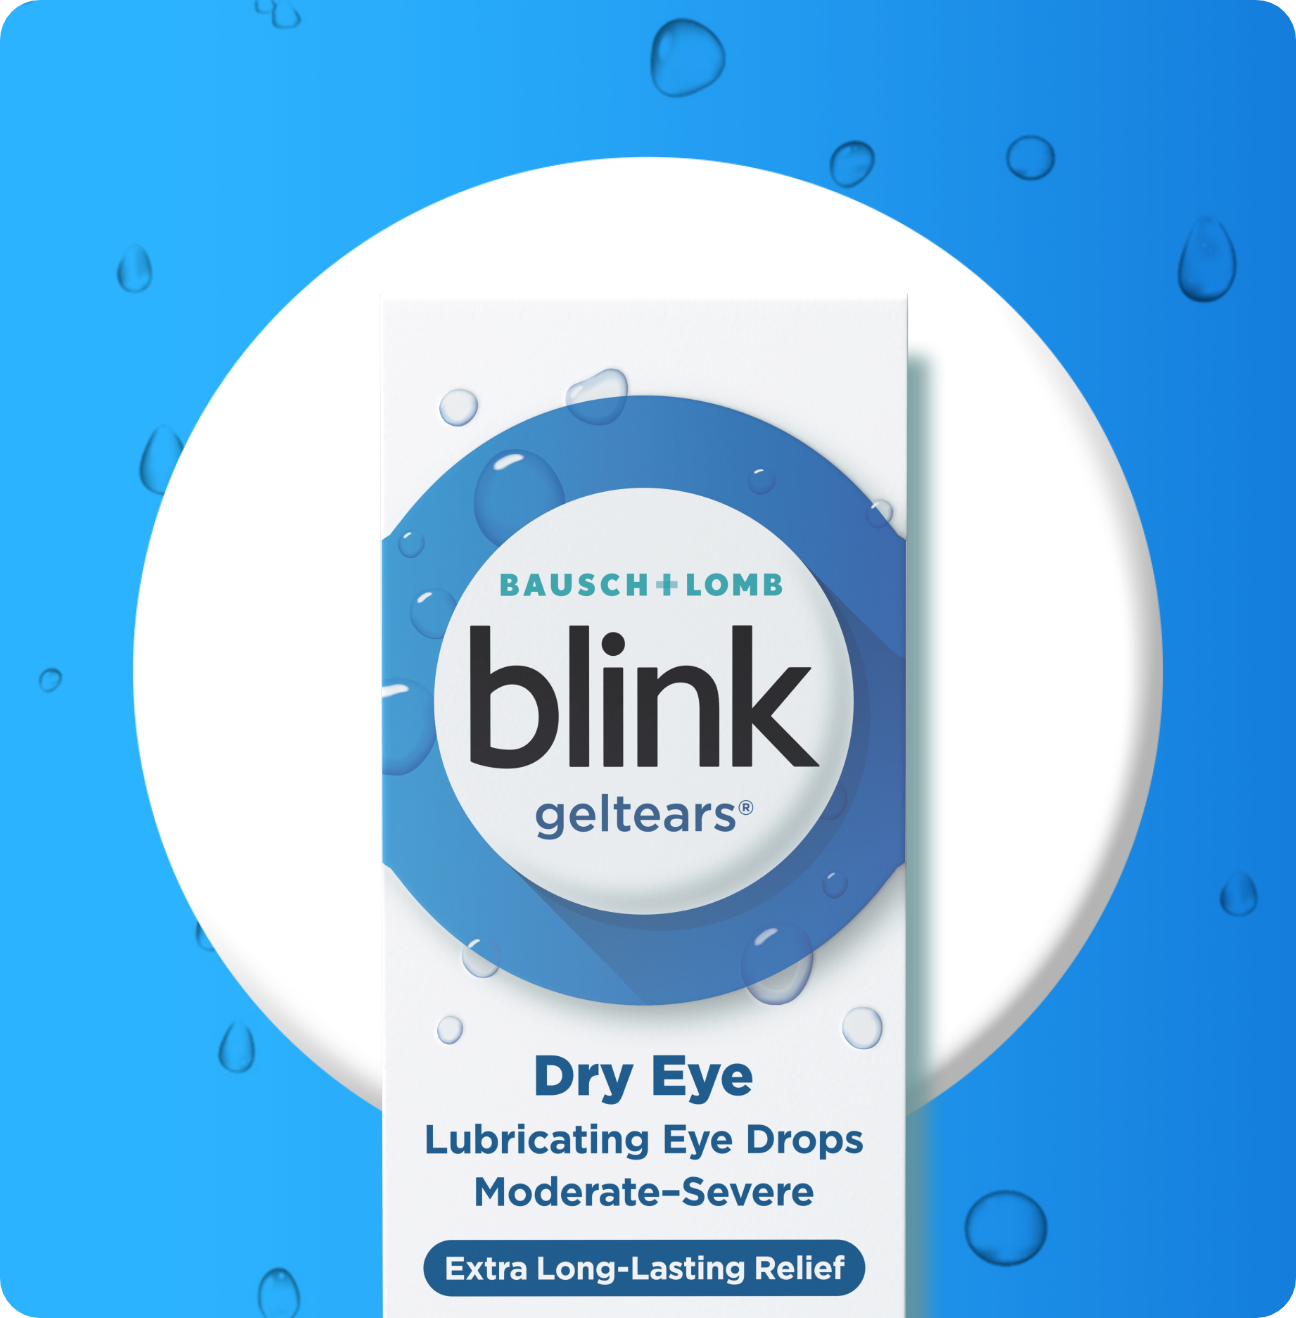 Blink GelTears Lubricating Eye Drops package